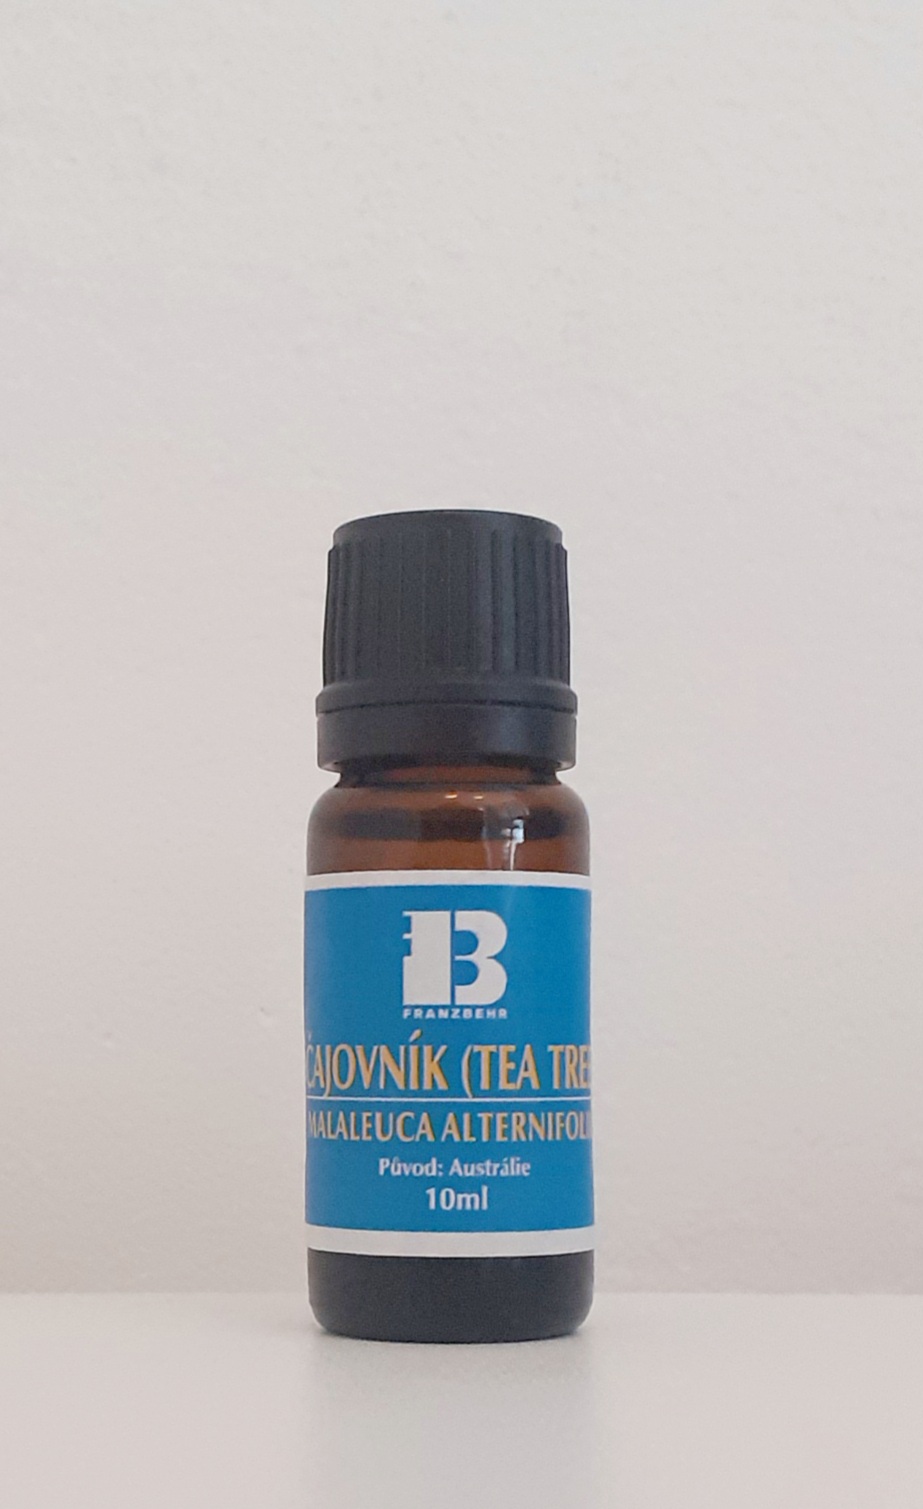 Obrázek produktu Esenciální olej Čajovník Tea tree (Malaleuca alternifolia)